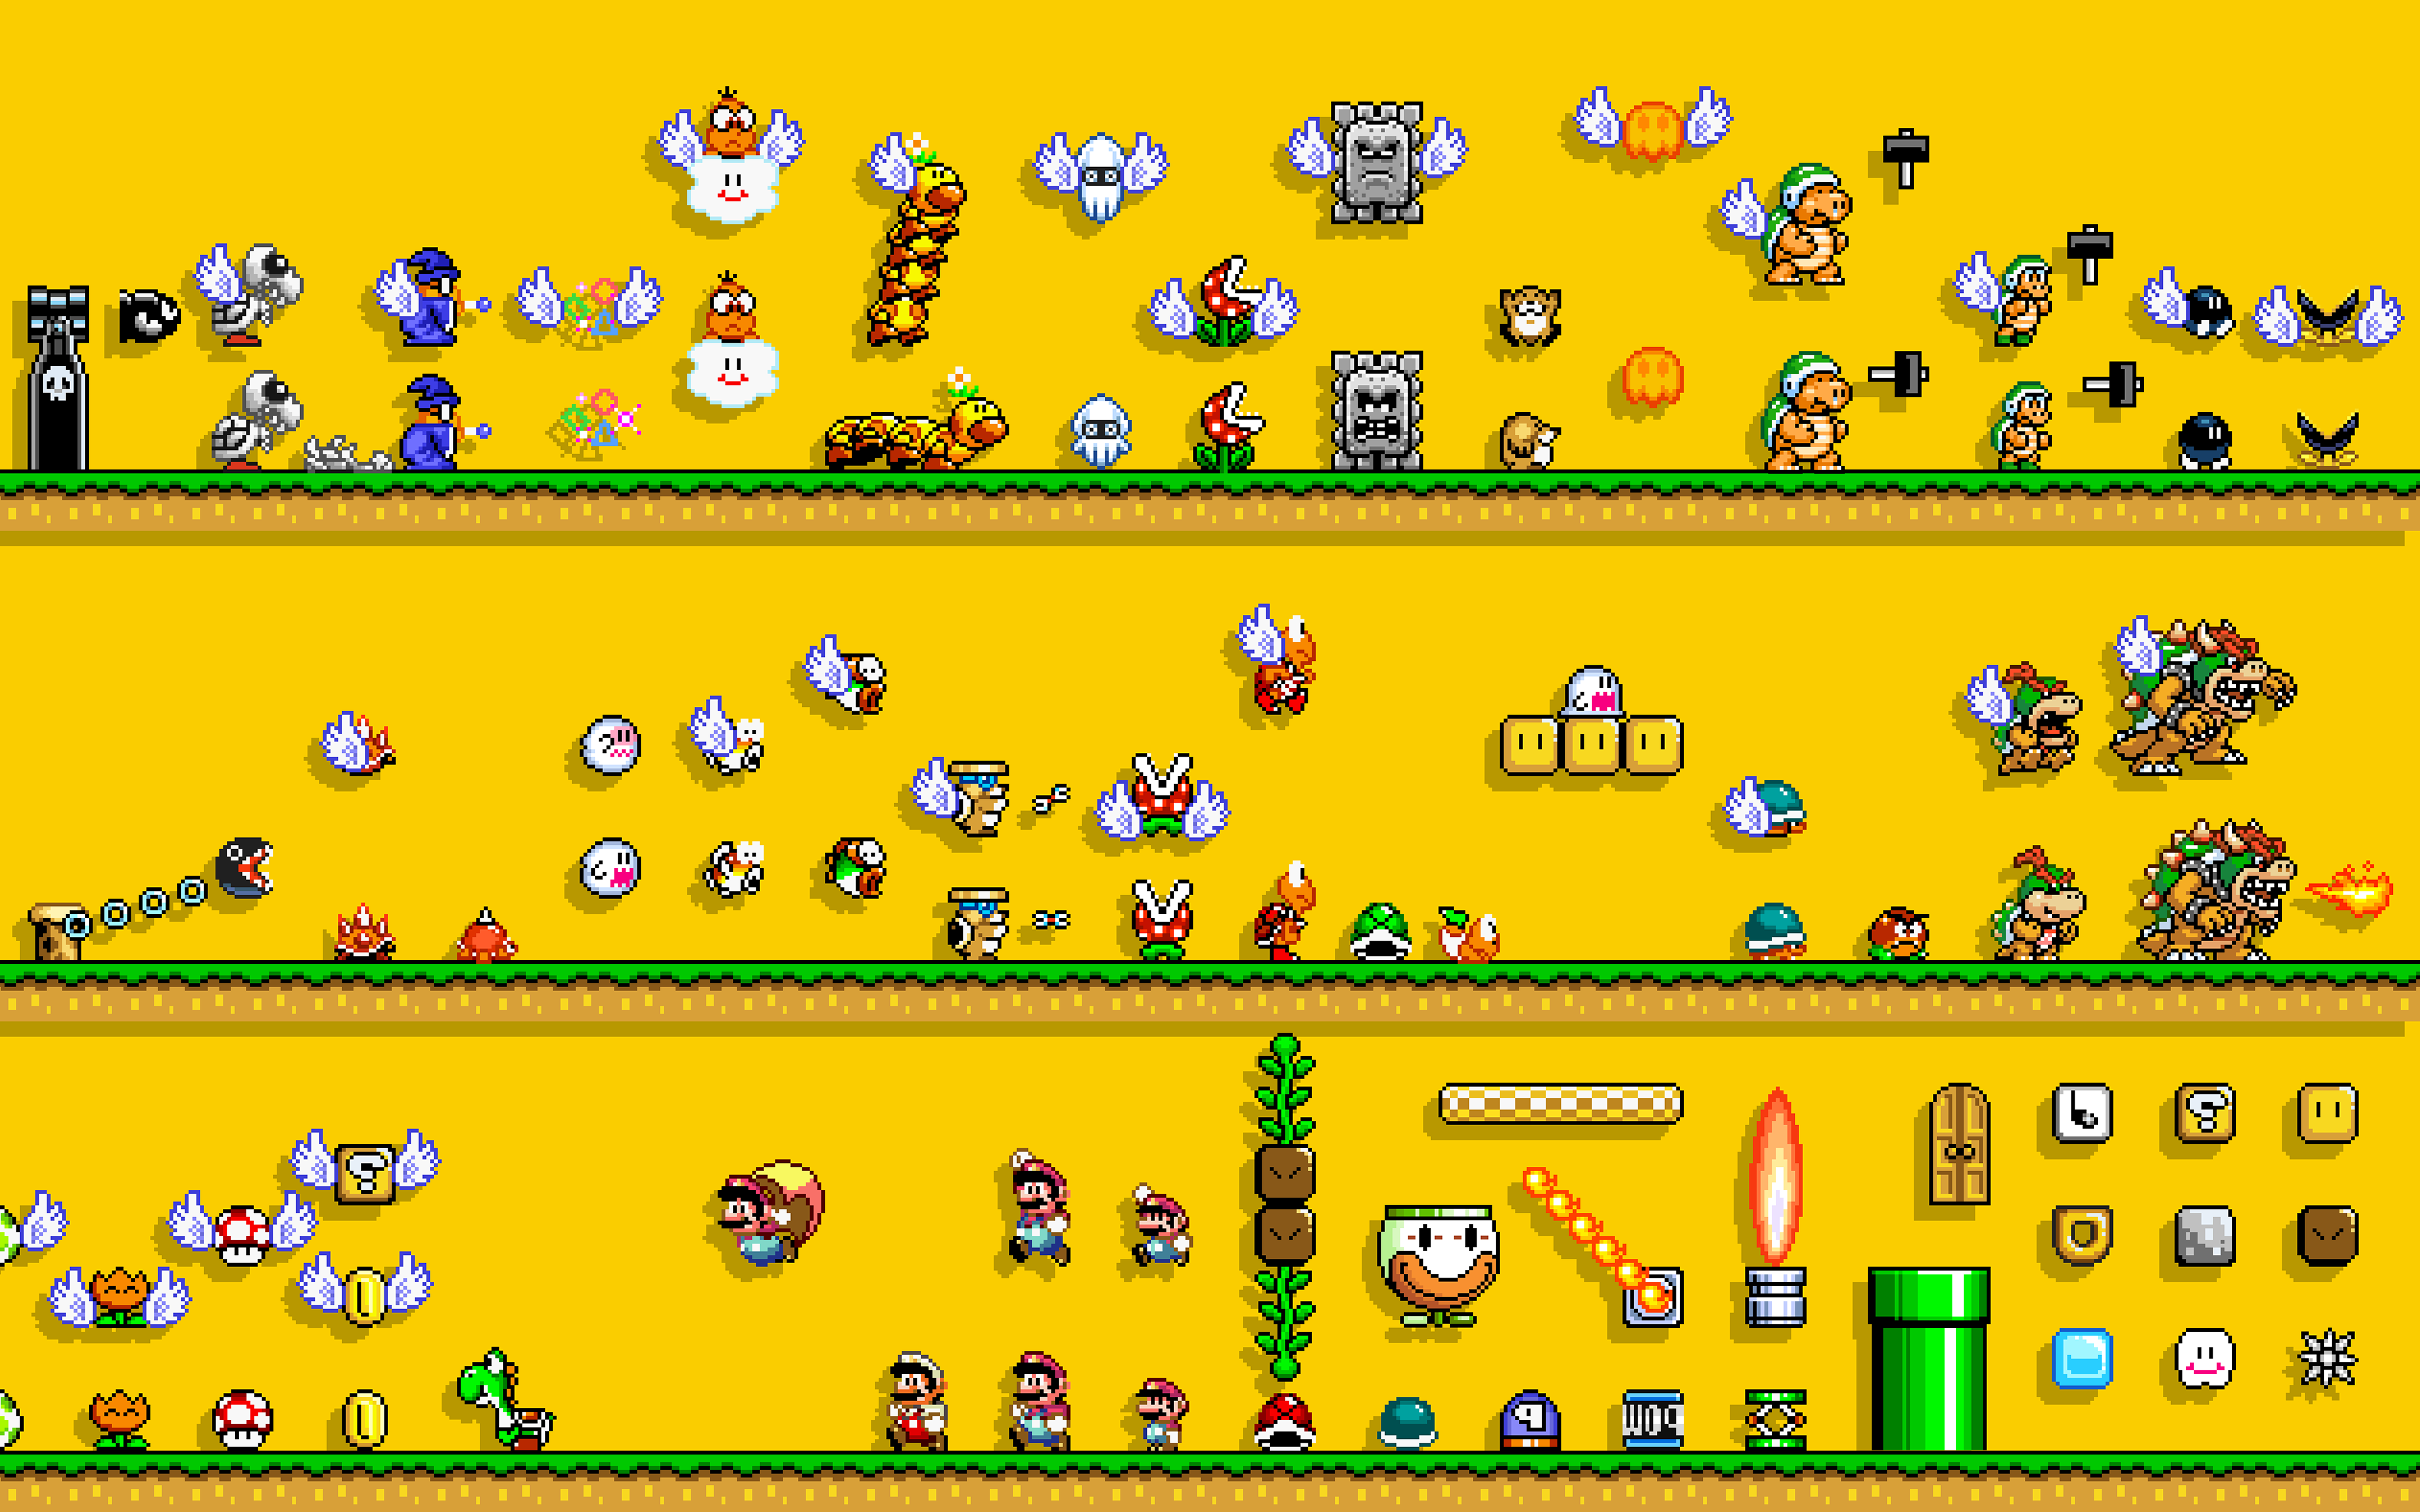 Mario Bros., Video Games, 8 bit, Simple Background, Retro Games